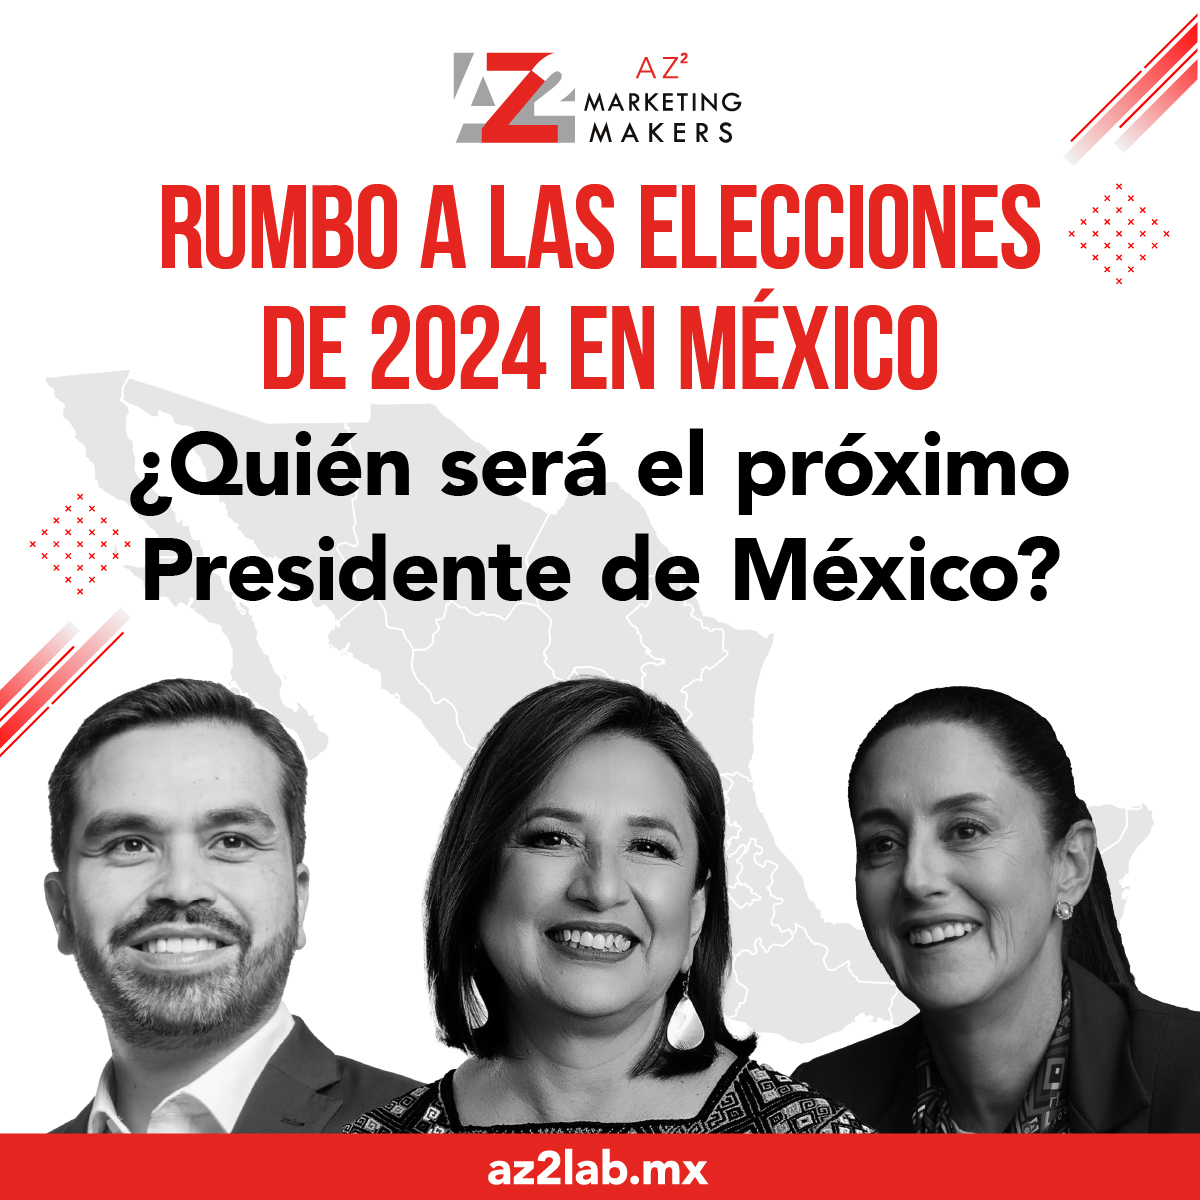 Anuncio AZ2 Elecciones 2024 en México